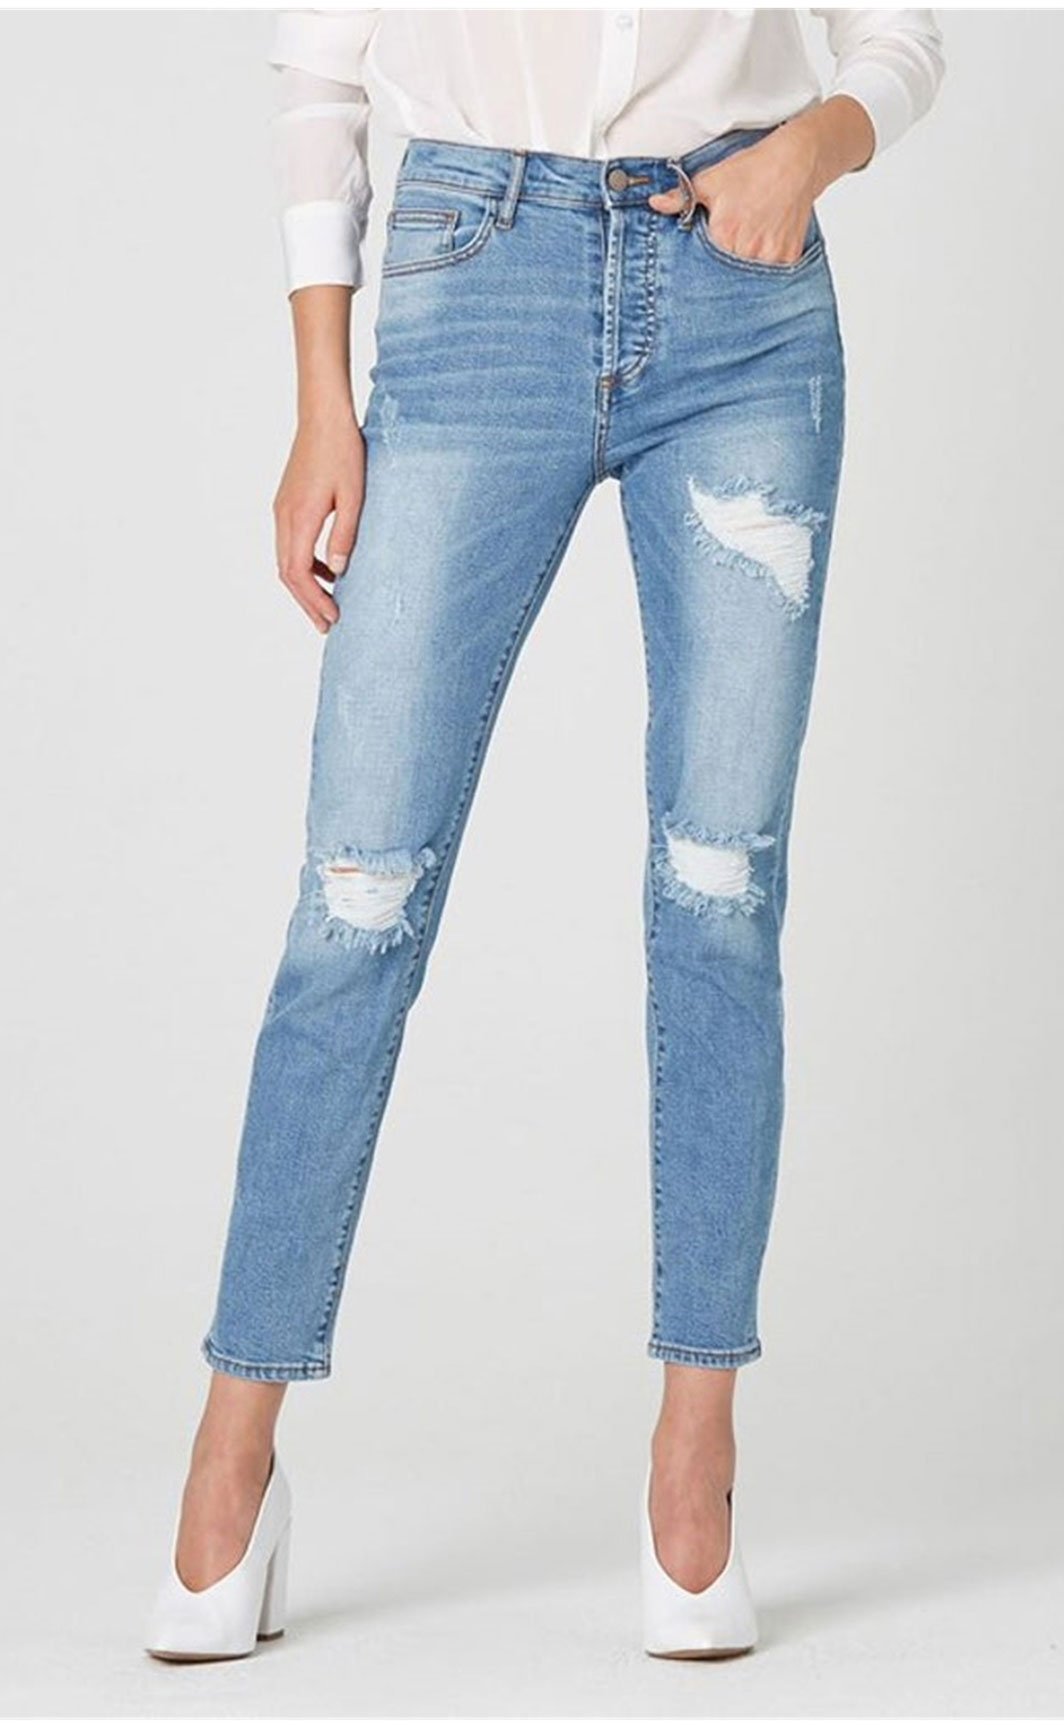 women wearing distressed denim jeans